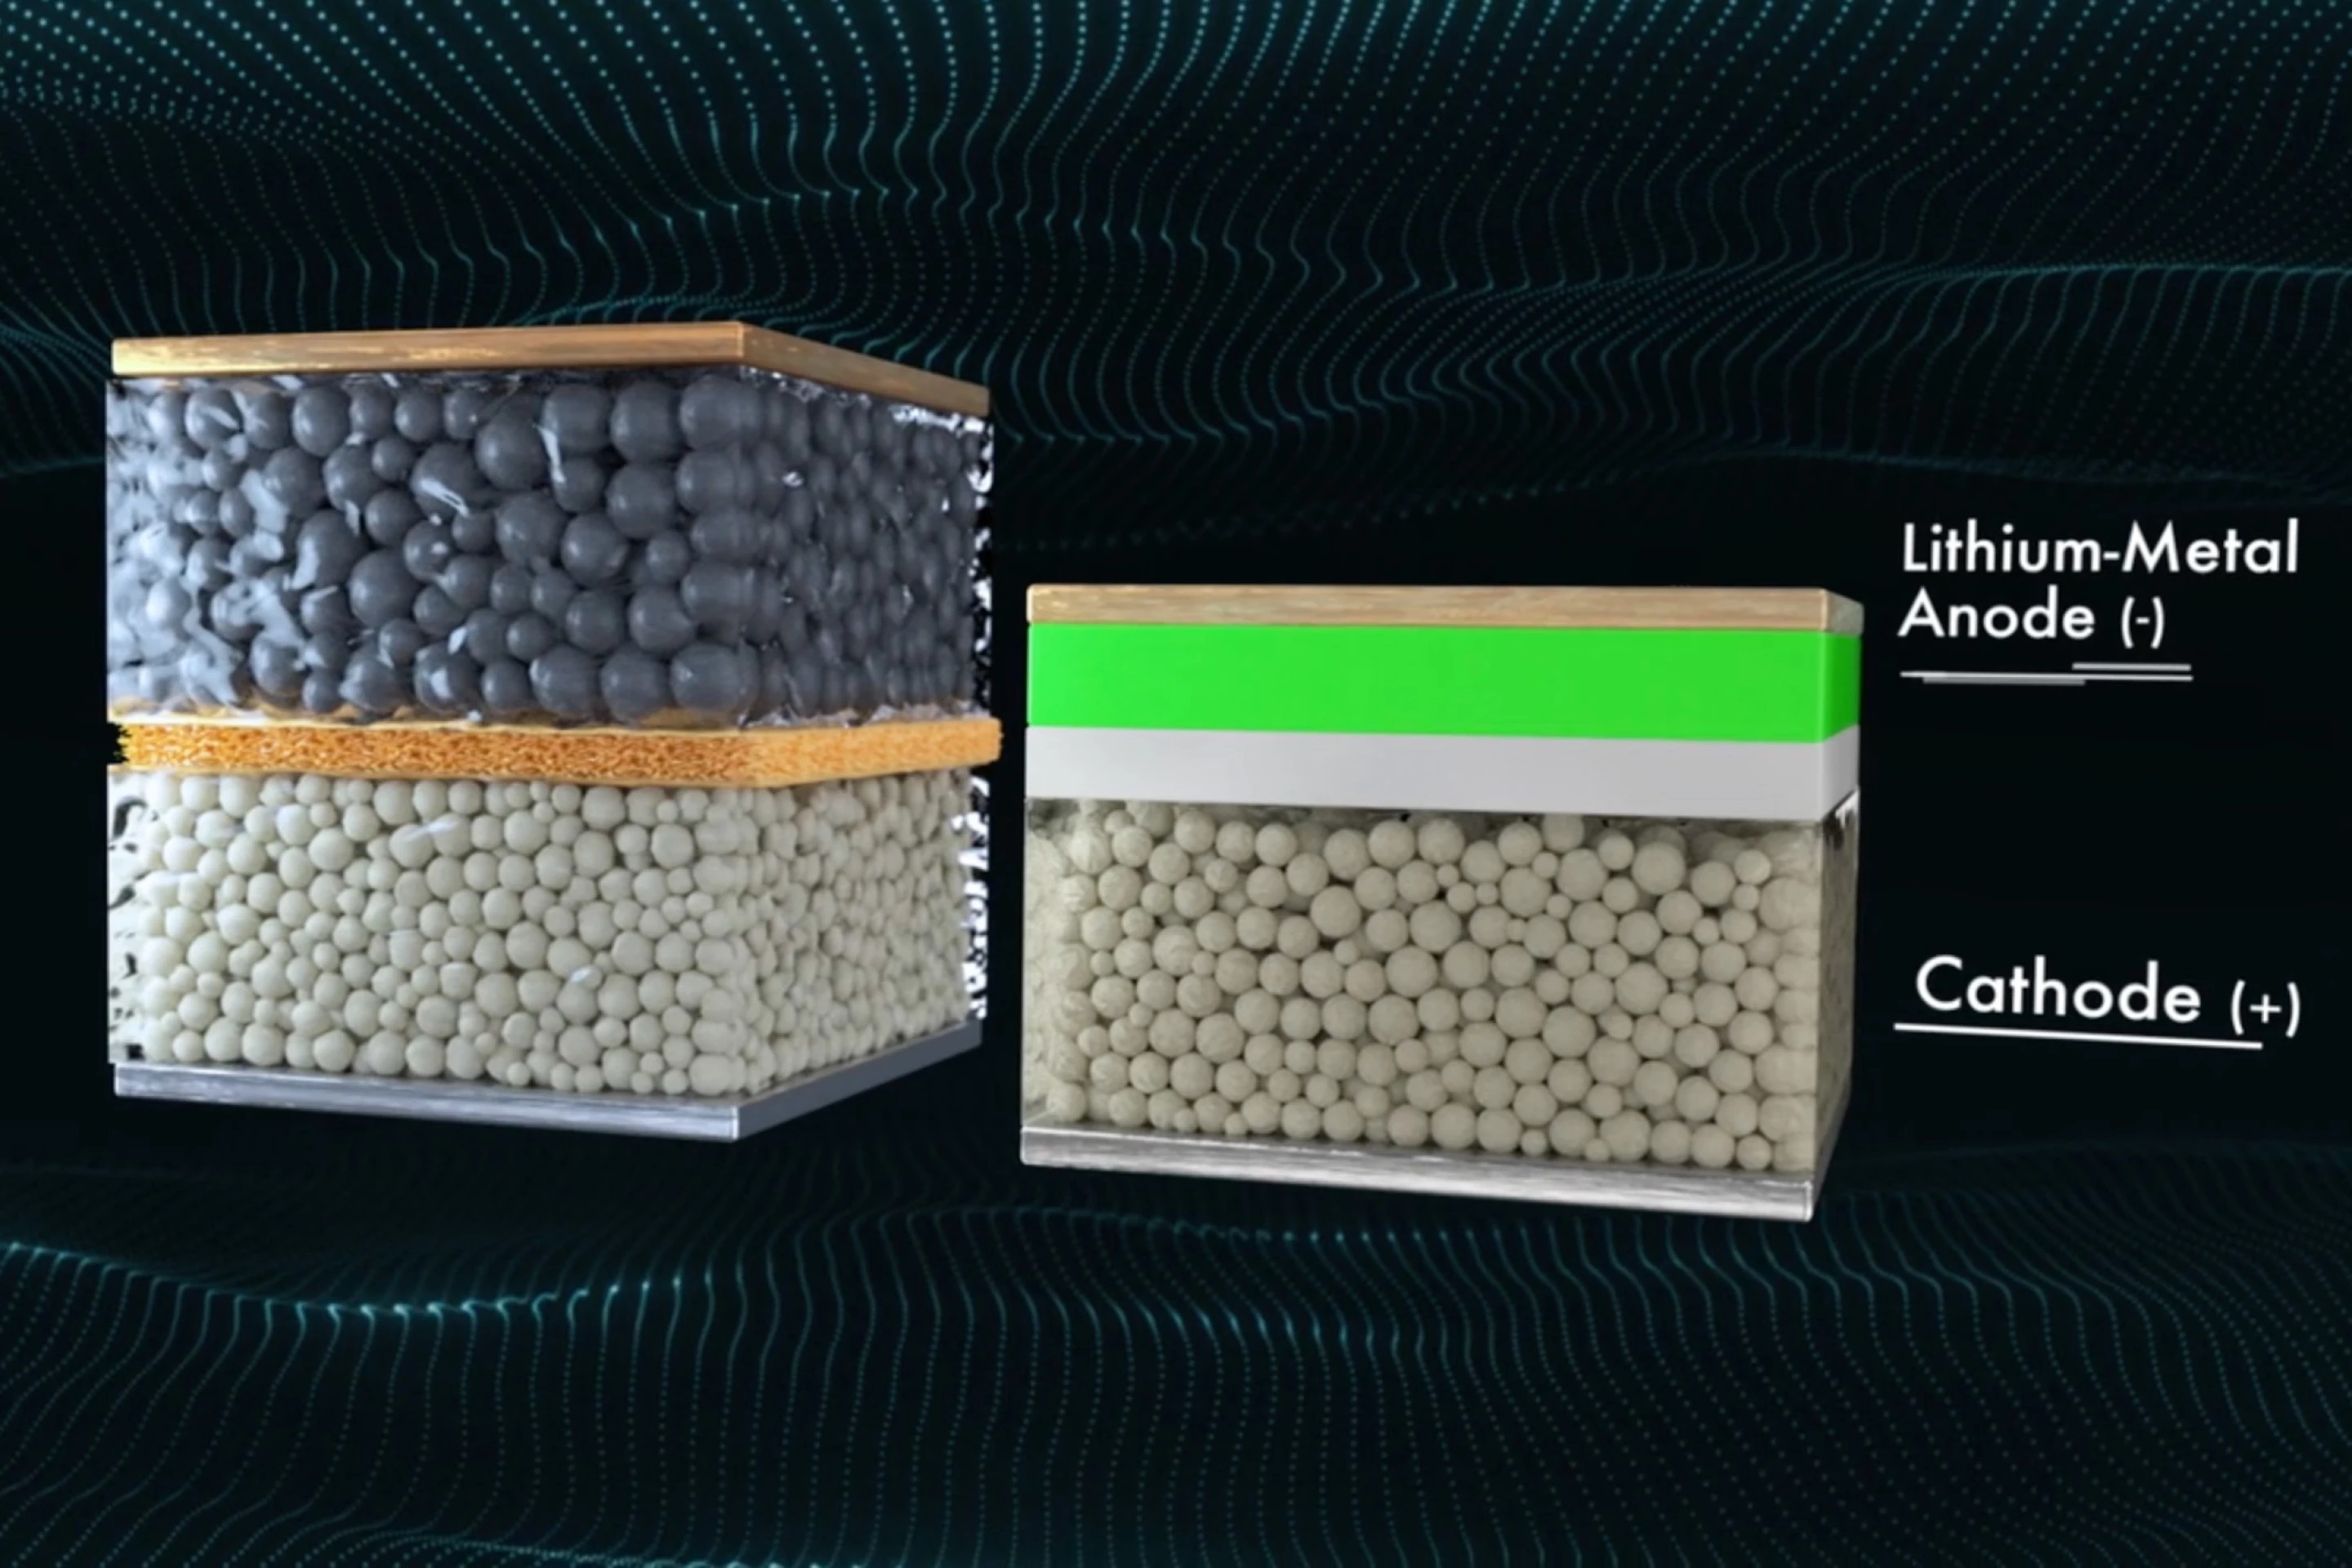 Baterie QuantumScape (vpravo) vs běžná lithium-iontová baterie. Kredit: QuantumScape.